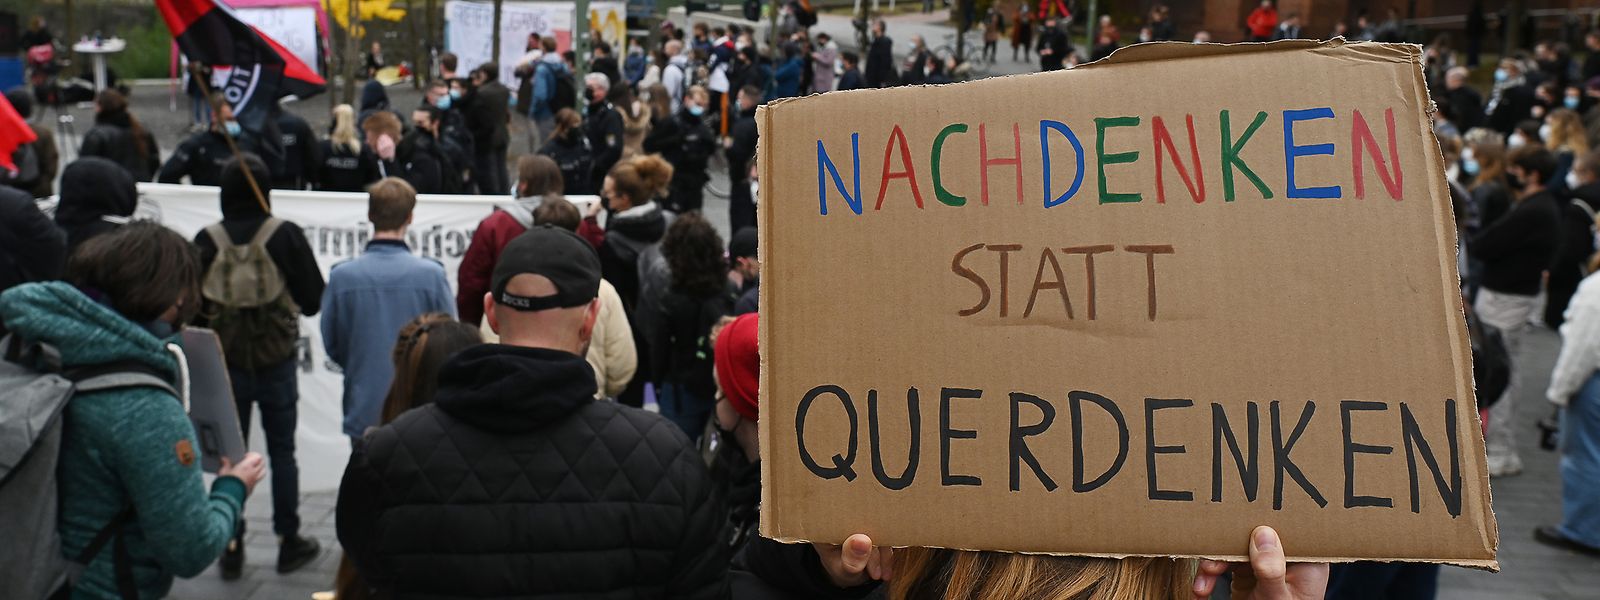 Ein Demonstrant auf einer Demo gegen die 3G-Regel an der Uni Kassel fordert zum Nachdenken auf.